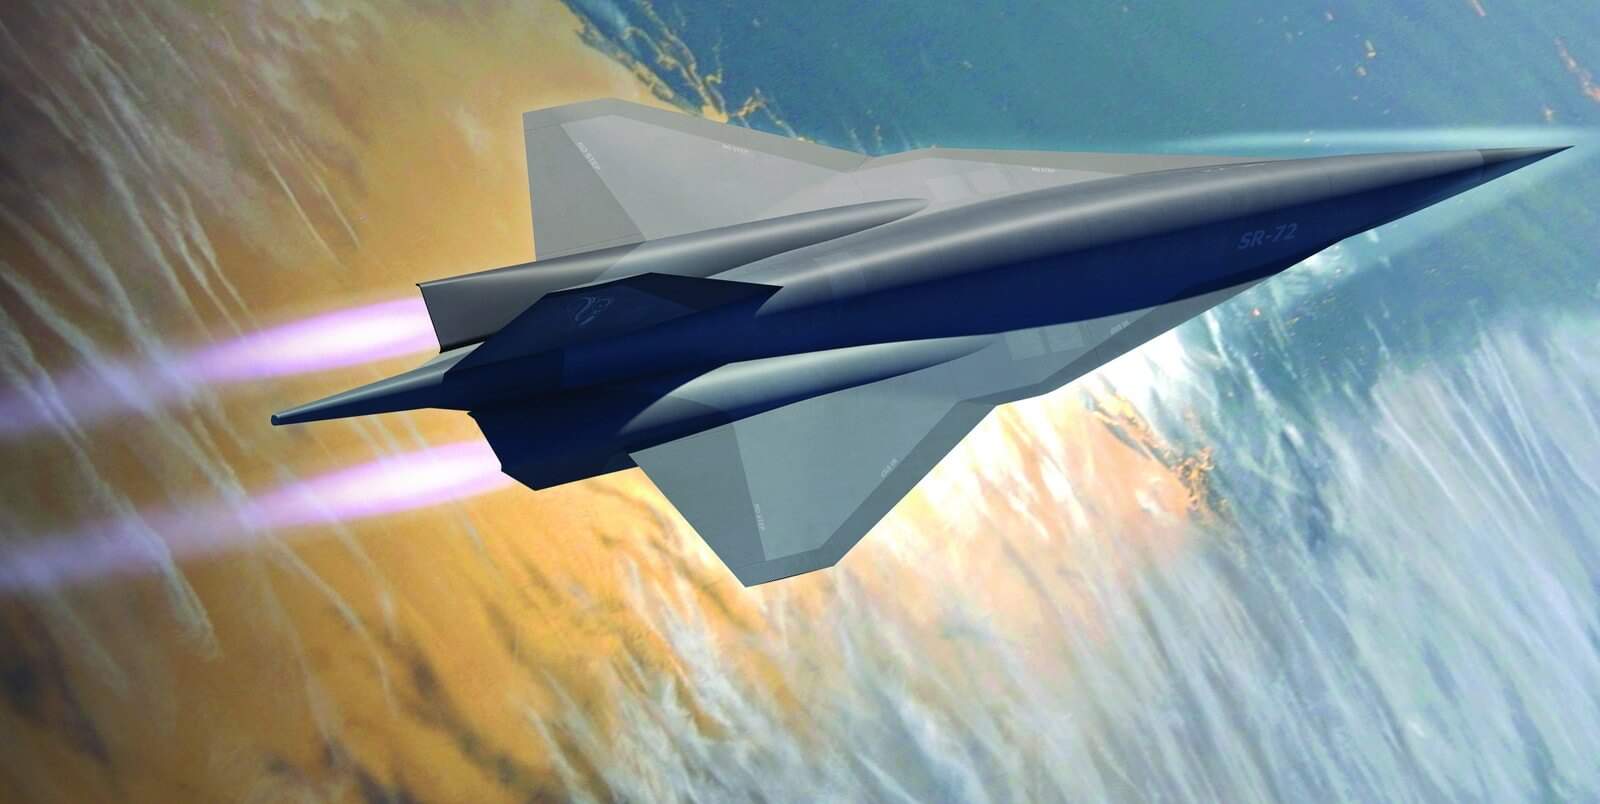 Ілюстрація літака SR-72 Blackbird компанії Lockheed Martin